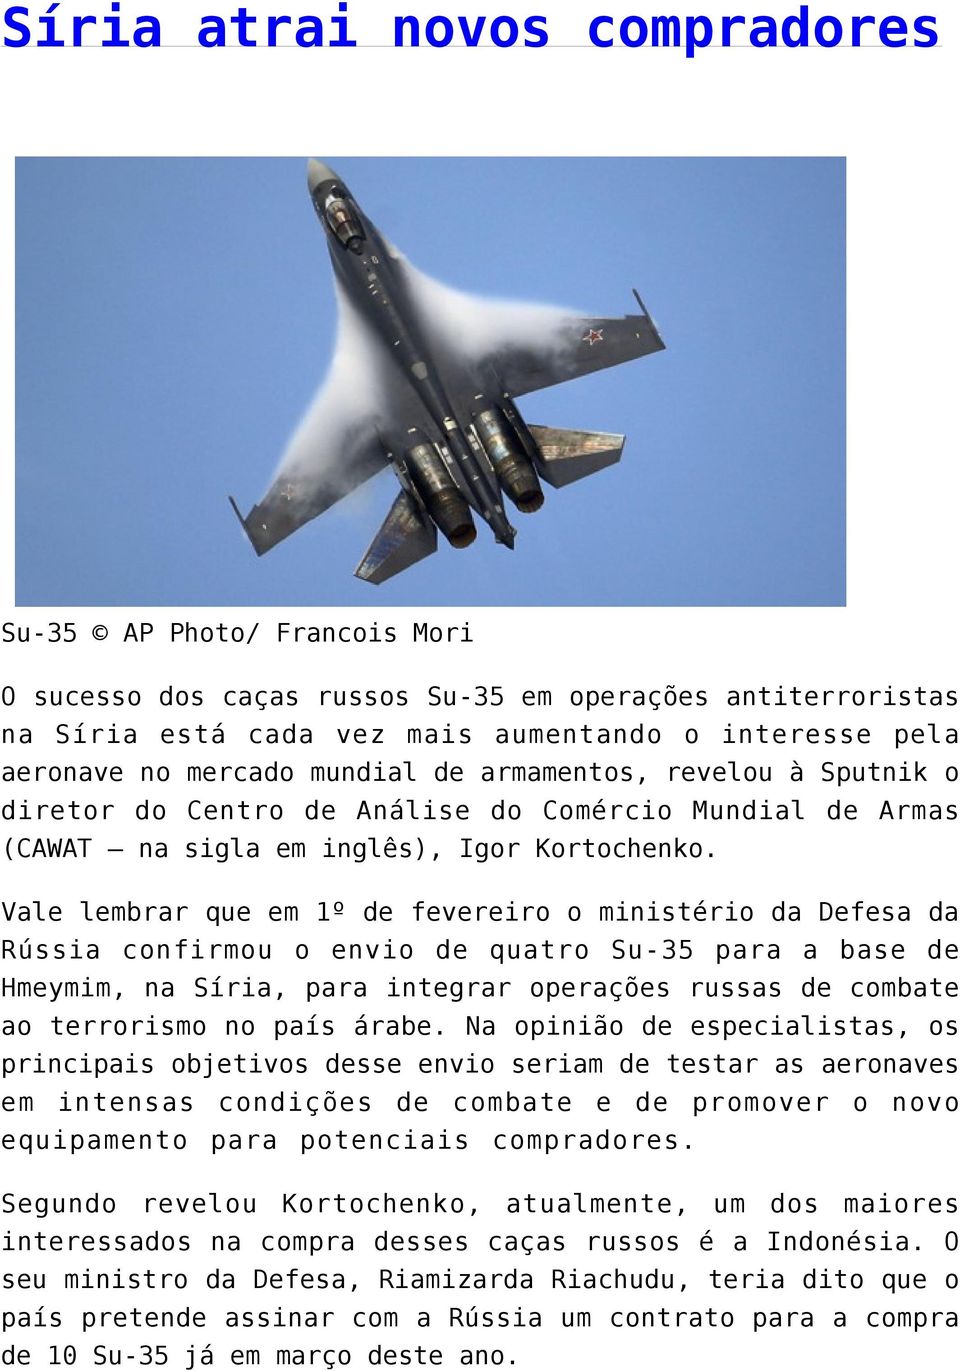 Vale lembrar que em 1º de fevereiro o ministério da Defesa da Rússia confirmou o envio de quatro Su-35 para a base de Hmeymim, na Síria, para integrar operações russas de combate ao terrorismo no